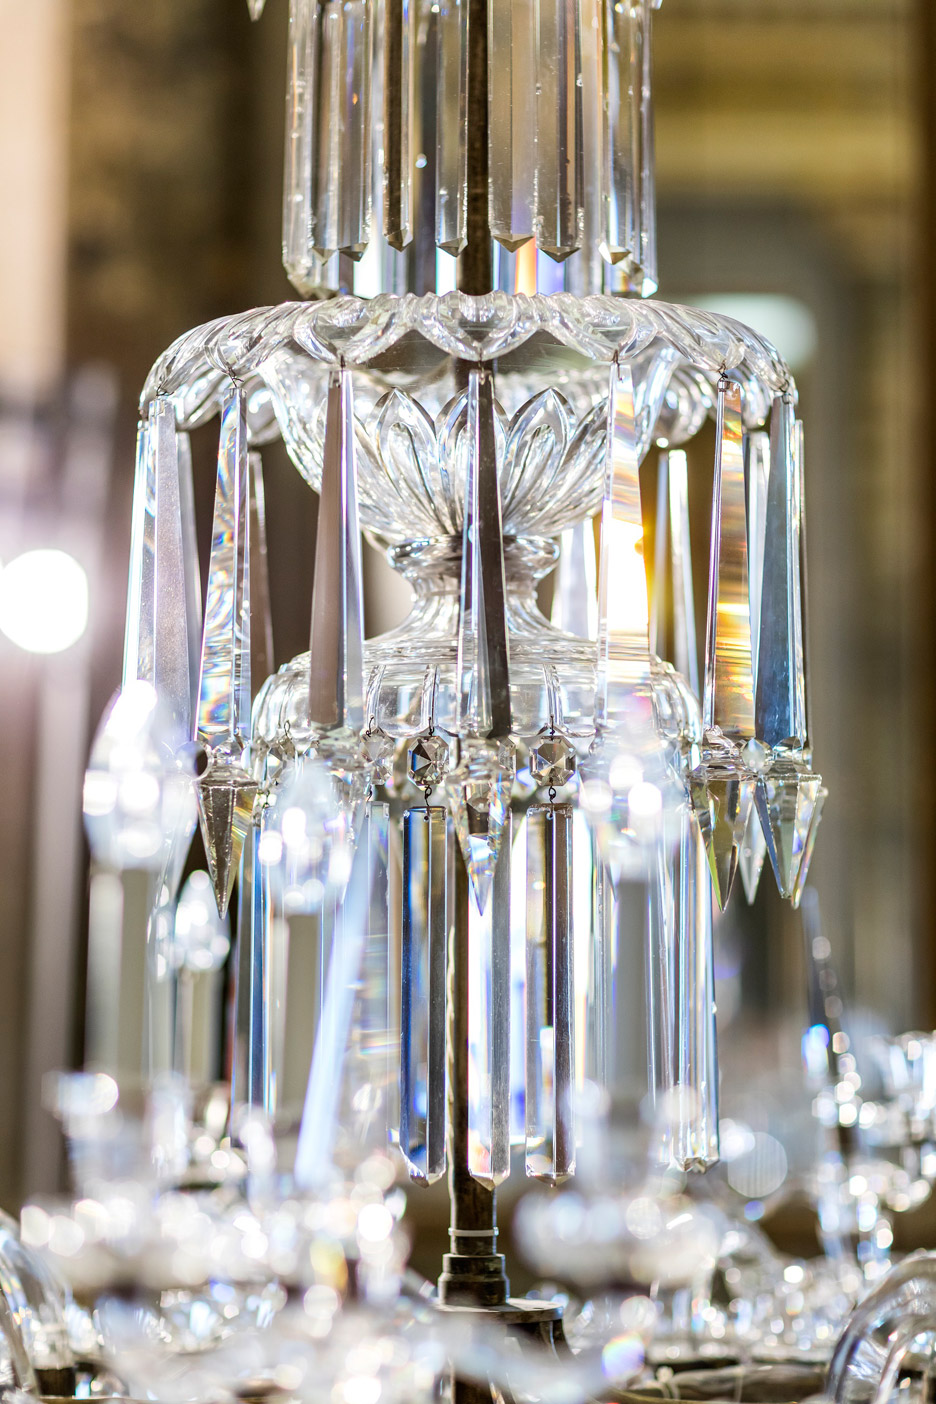 Lasvit restores crystal chandeliers for Milan design week